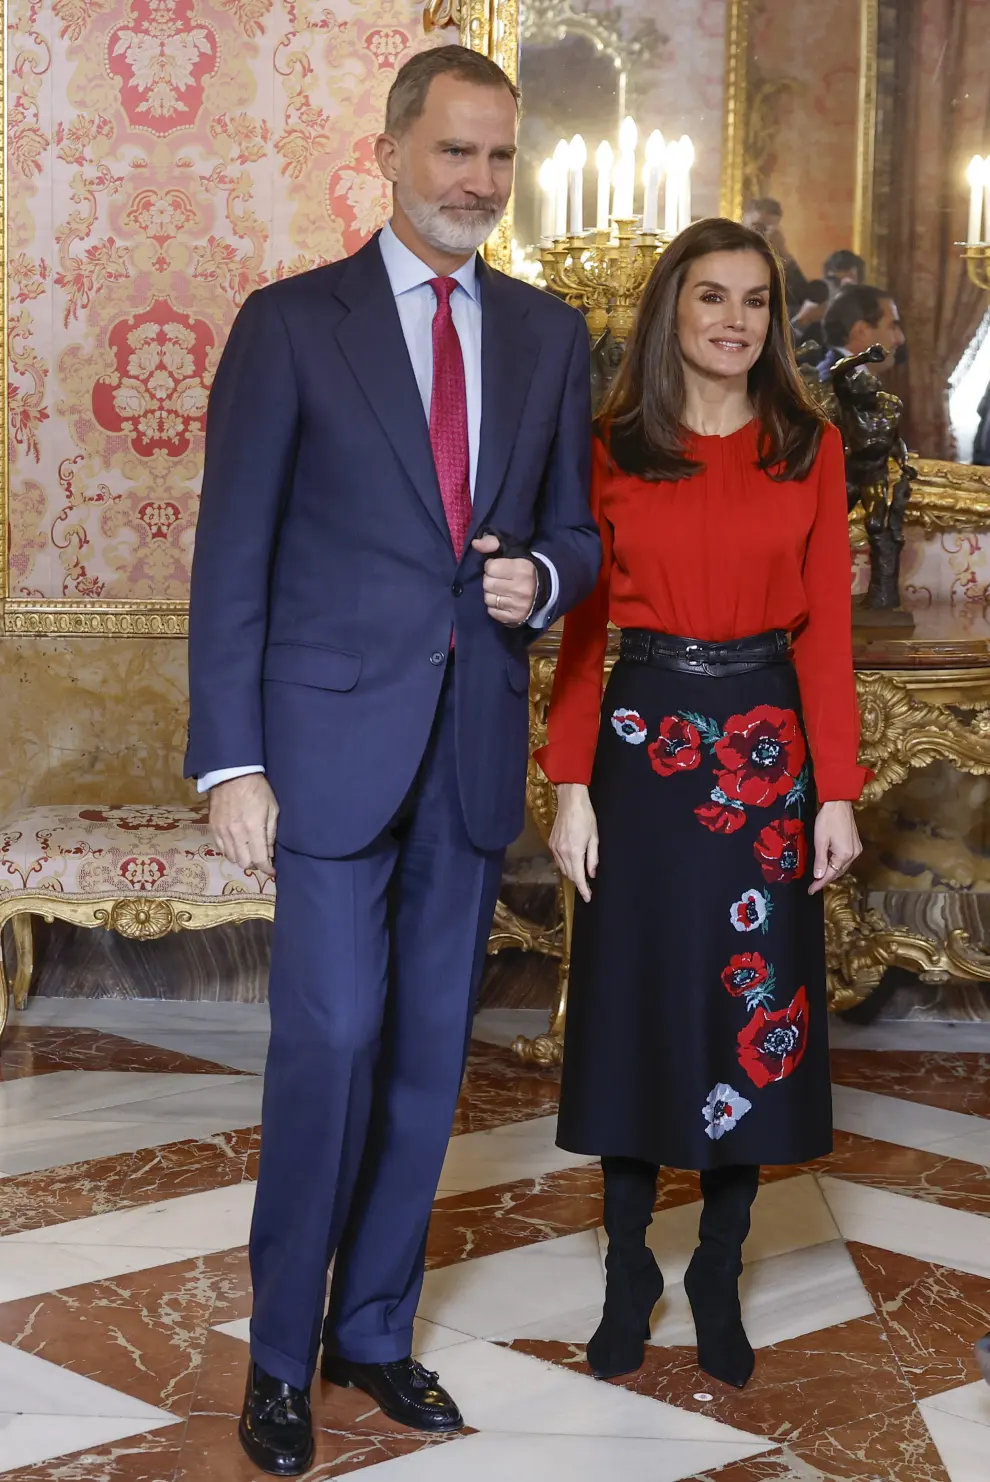 Los Reyes presiden el patronato de la Fundación Princesa de Gerona